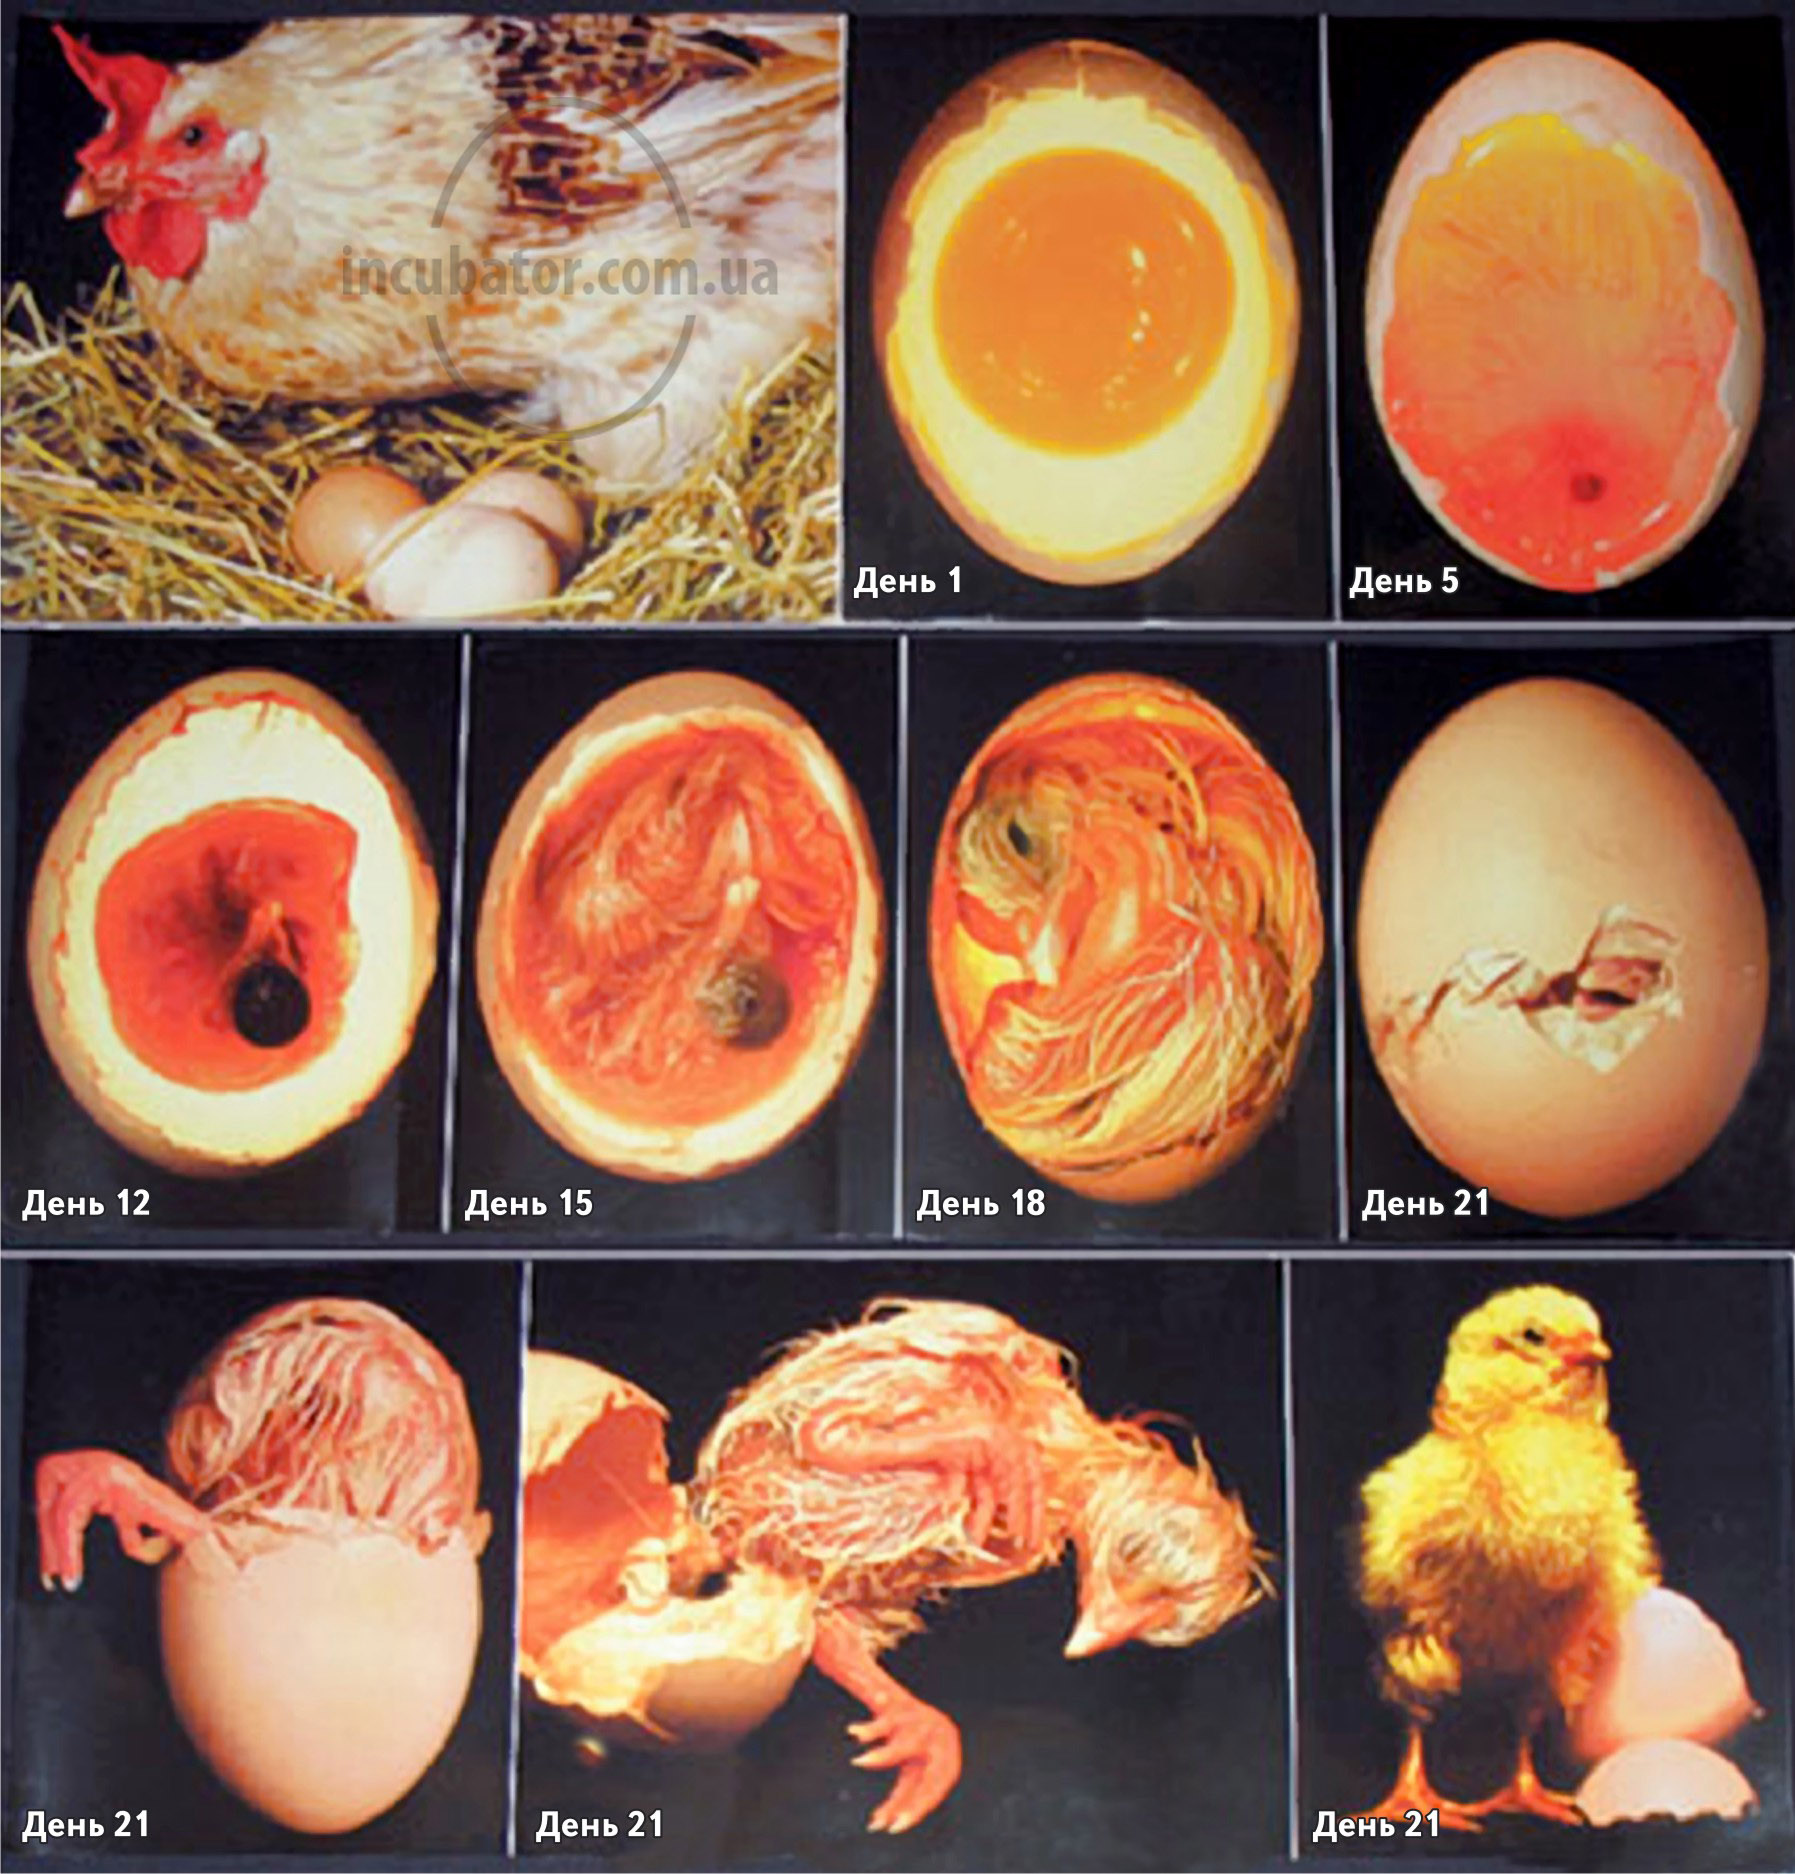 Последние дни инкубации яиц. Стадия развития куриного инкубационного яйца. Овоскопирование утиных яиц. Яйцо индейки инкубационное овоскопирование. Инкубация утиных яиц овоскопирование.